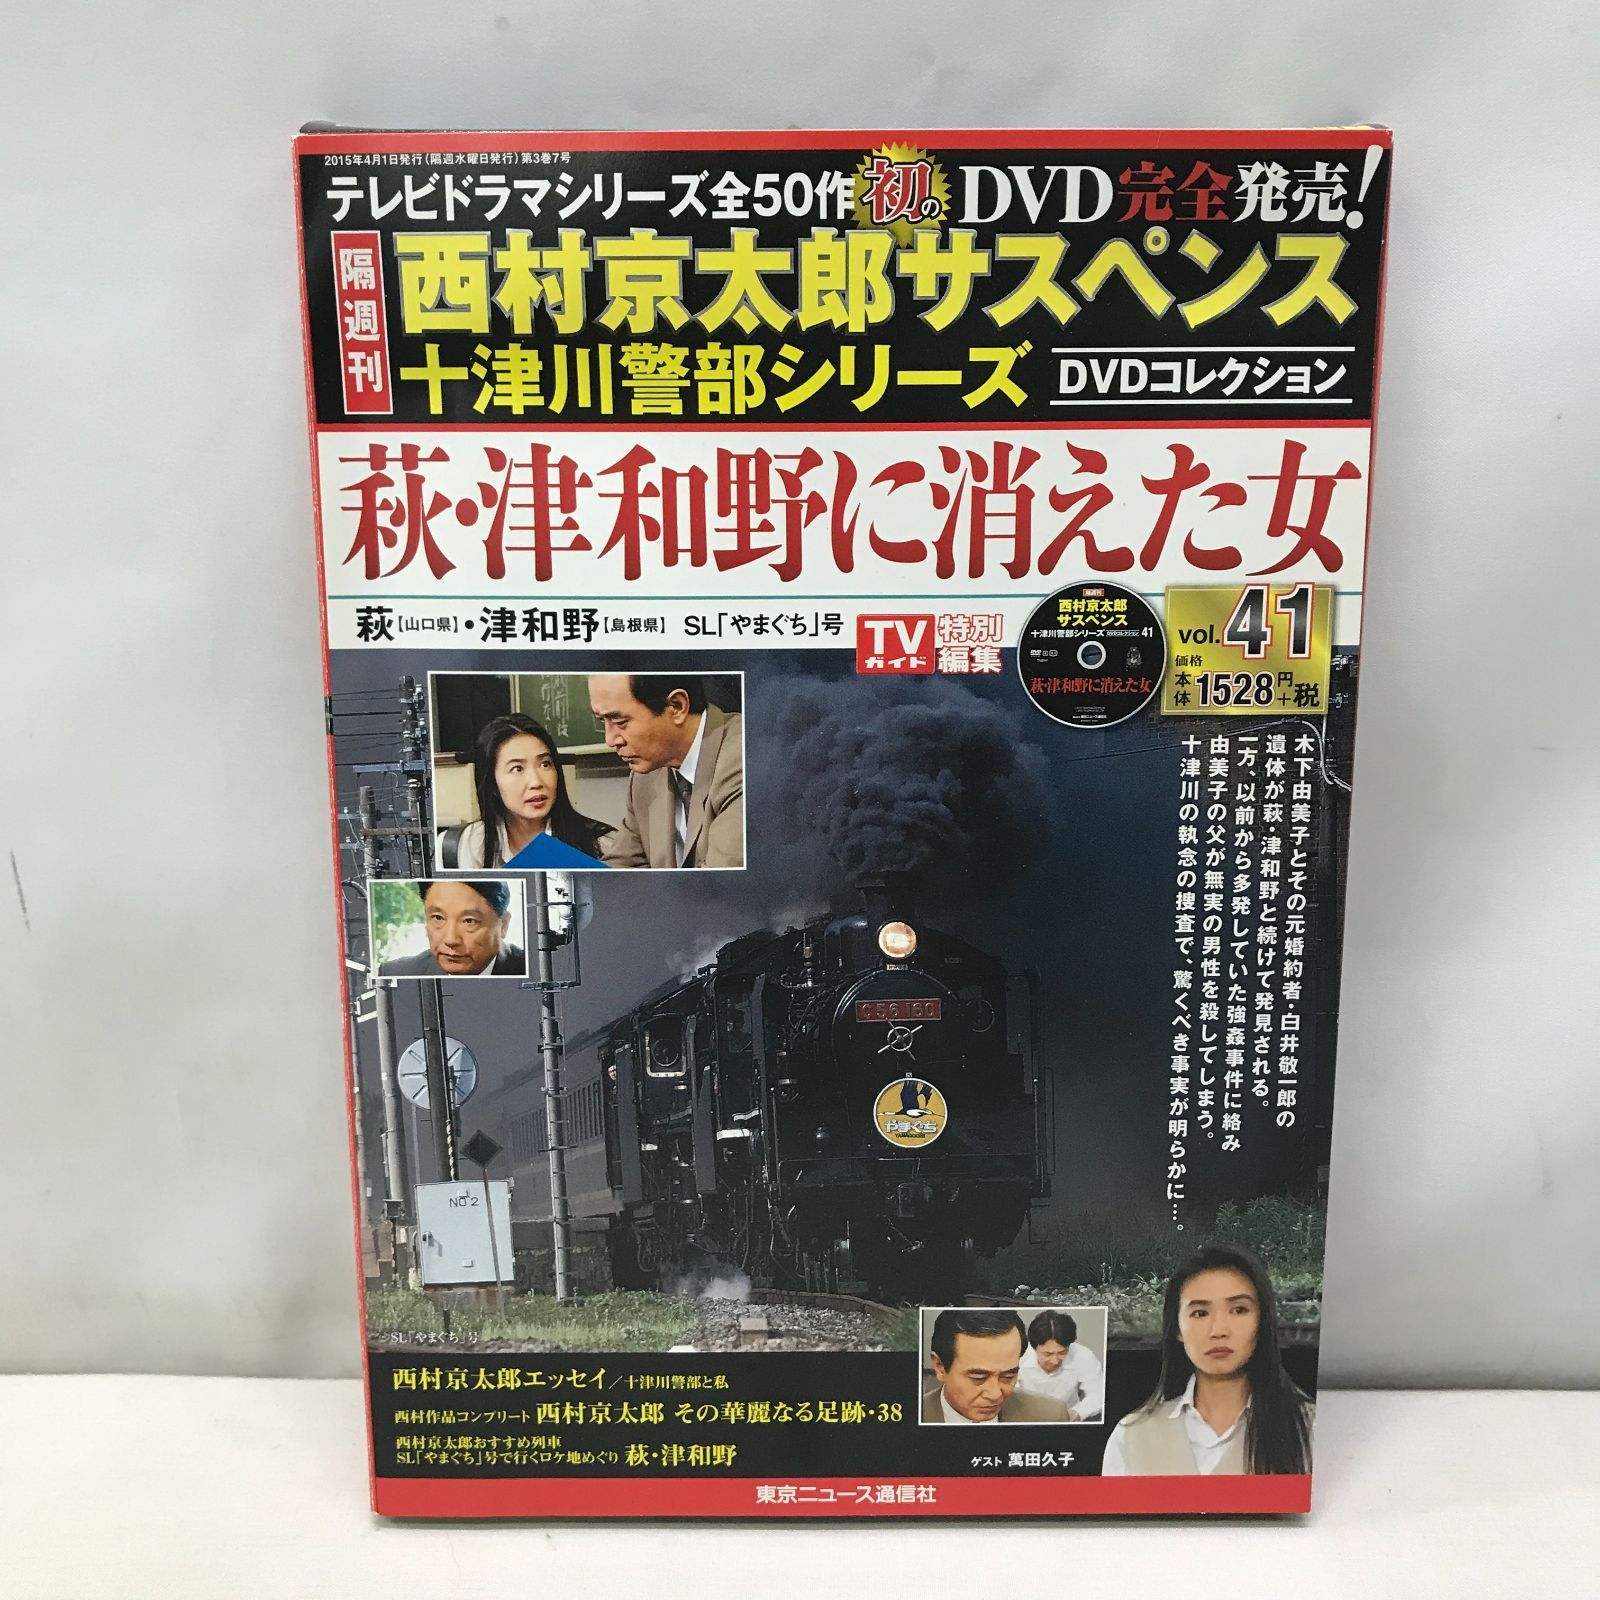 西村京太郎サスペンス 十津川警部シリーズ DVD コレクション vol.5~8